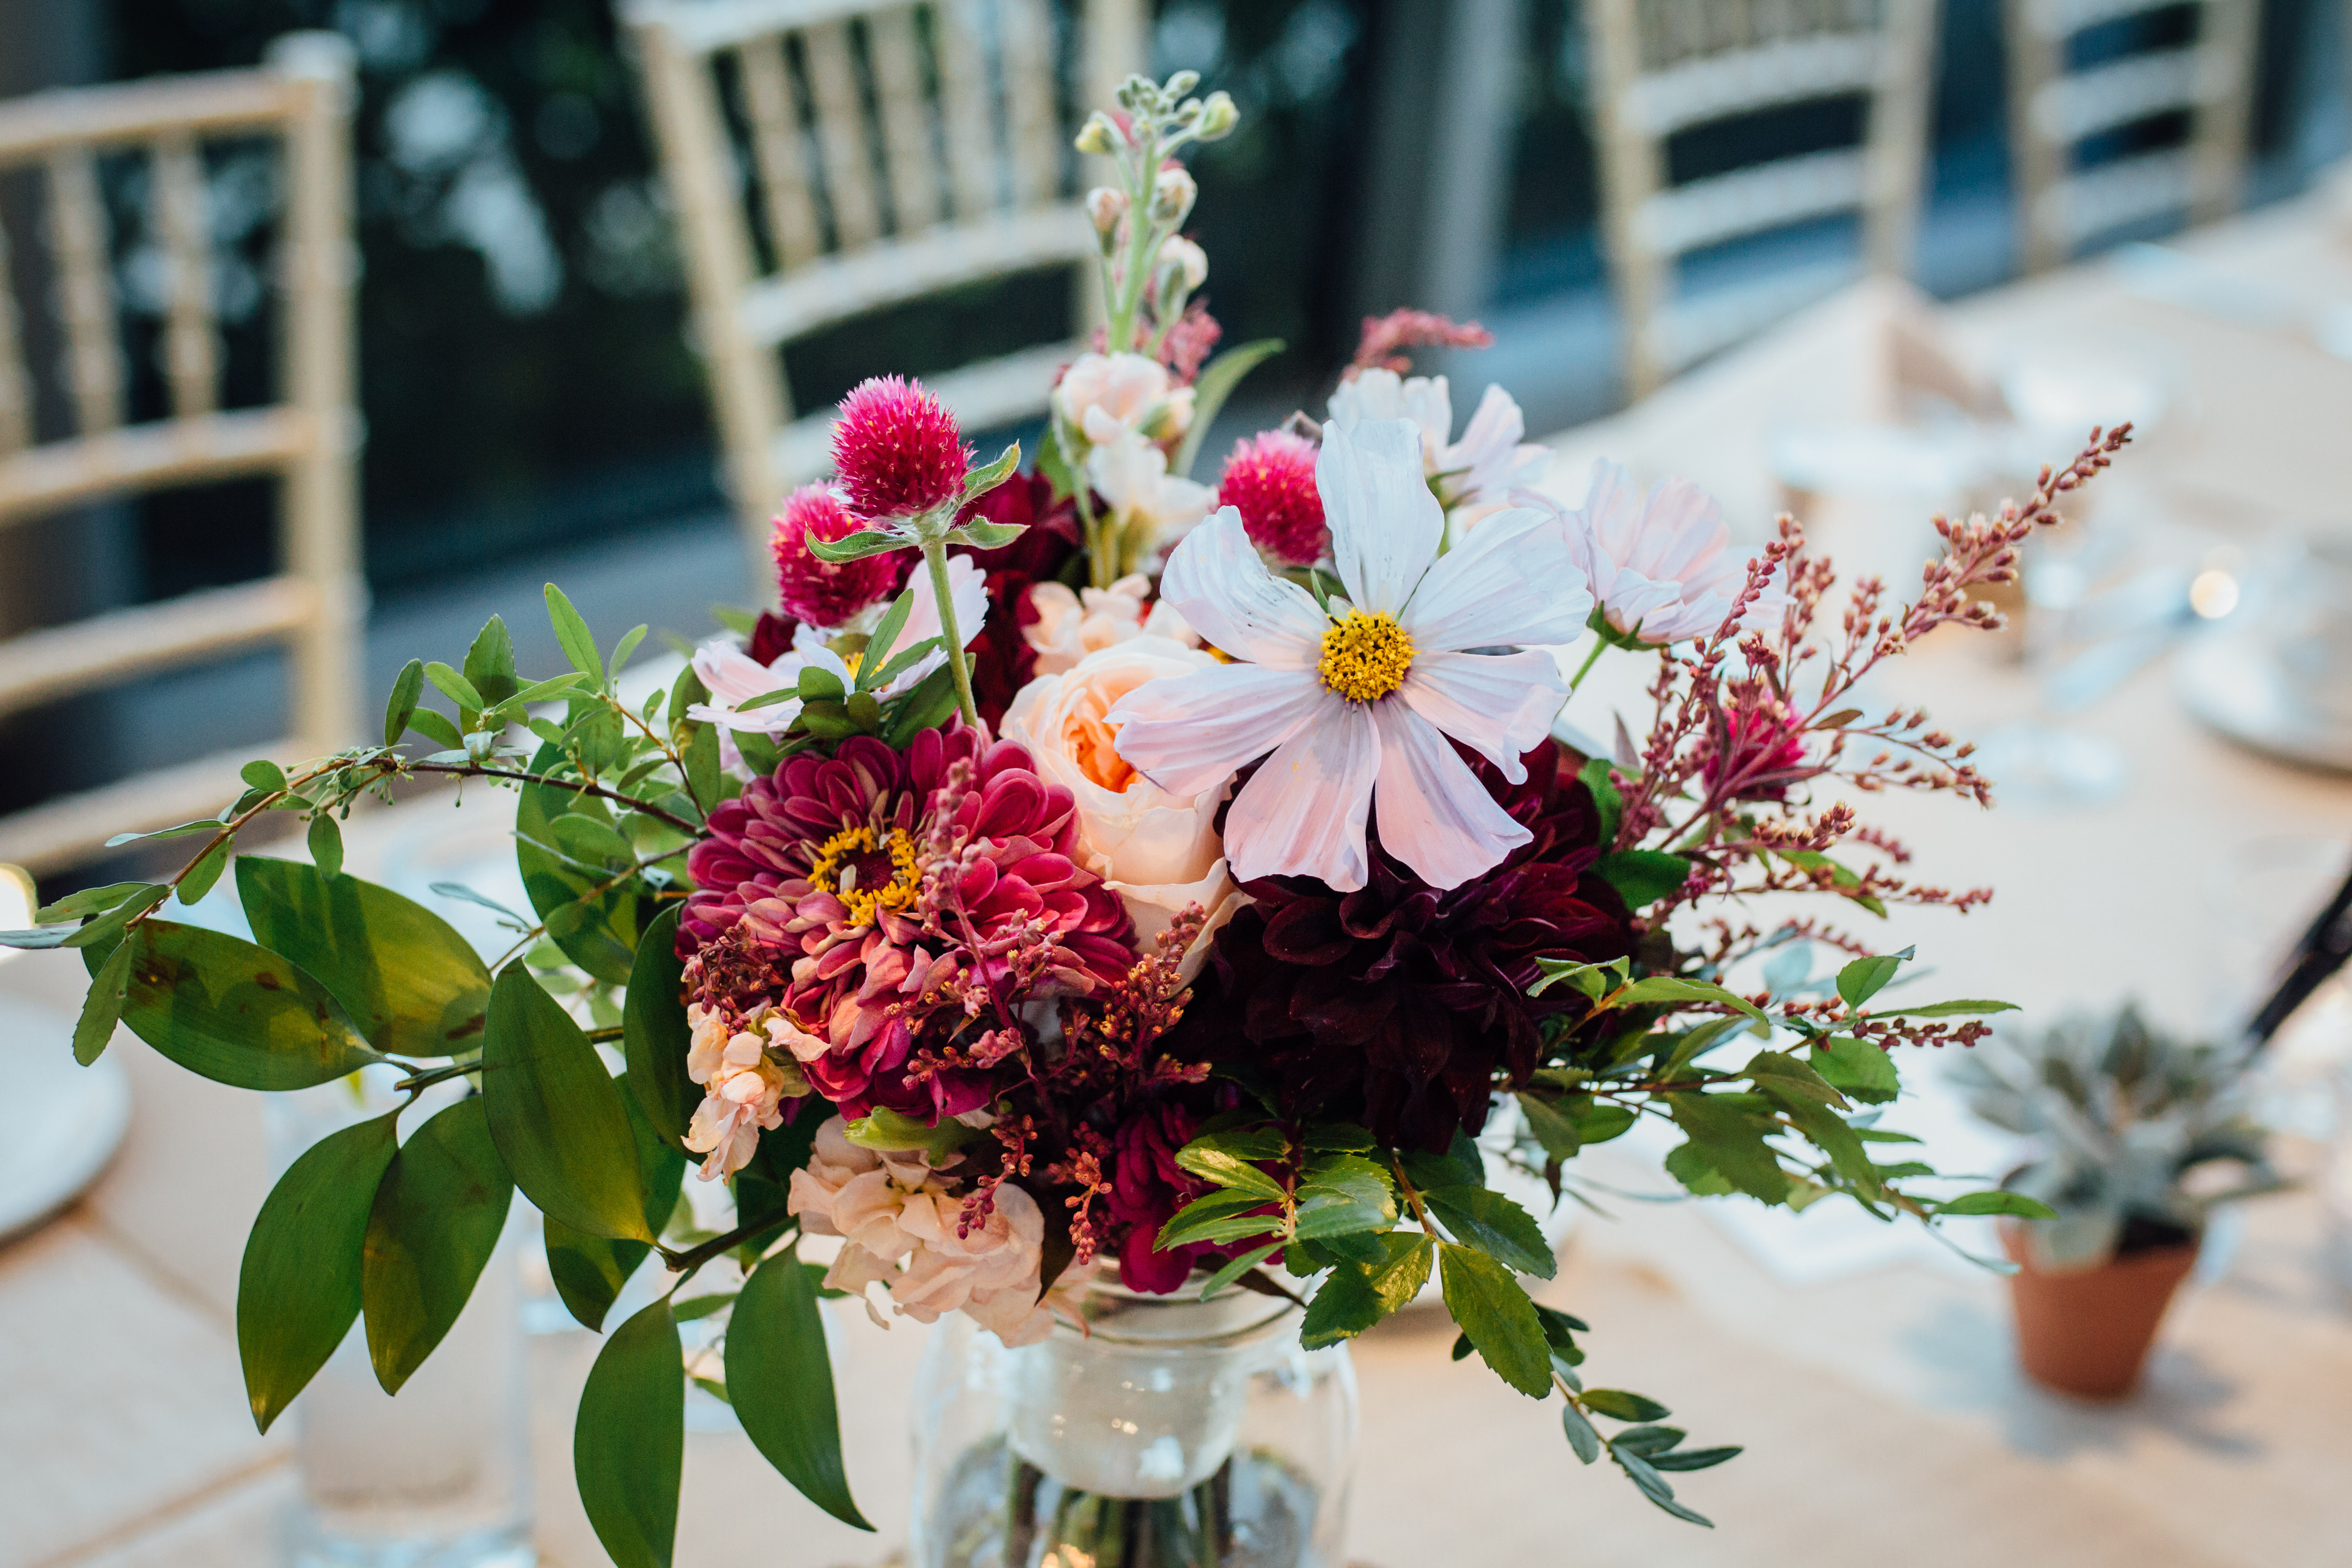 Qualico Family Centre Wedding - bridesmaid flowers